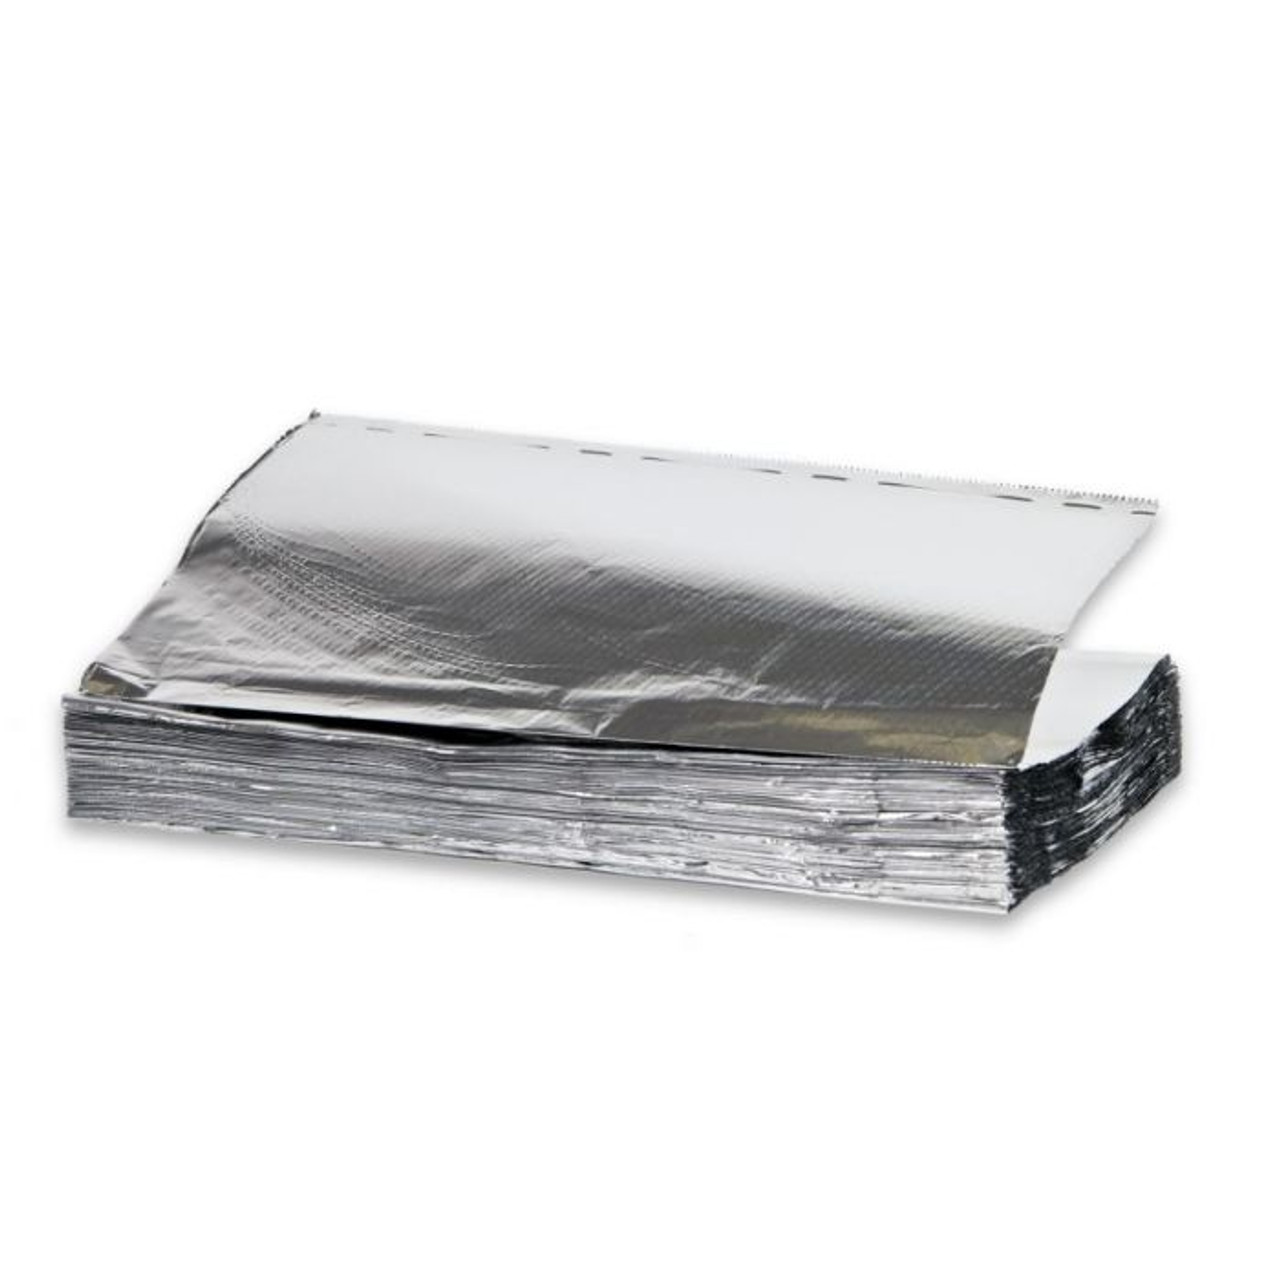 FOIL/ Aluminum Foil Sheets 9 x 10.75, 500 Sheets/box, 6 Boxes